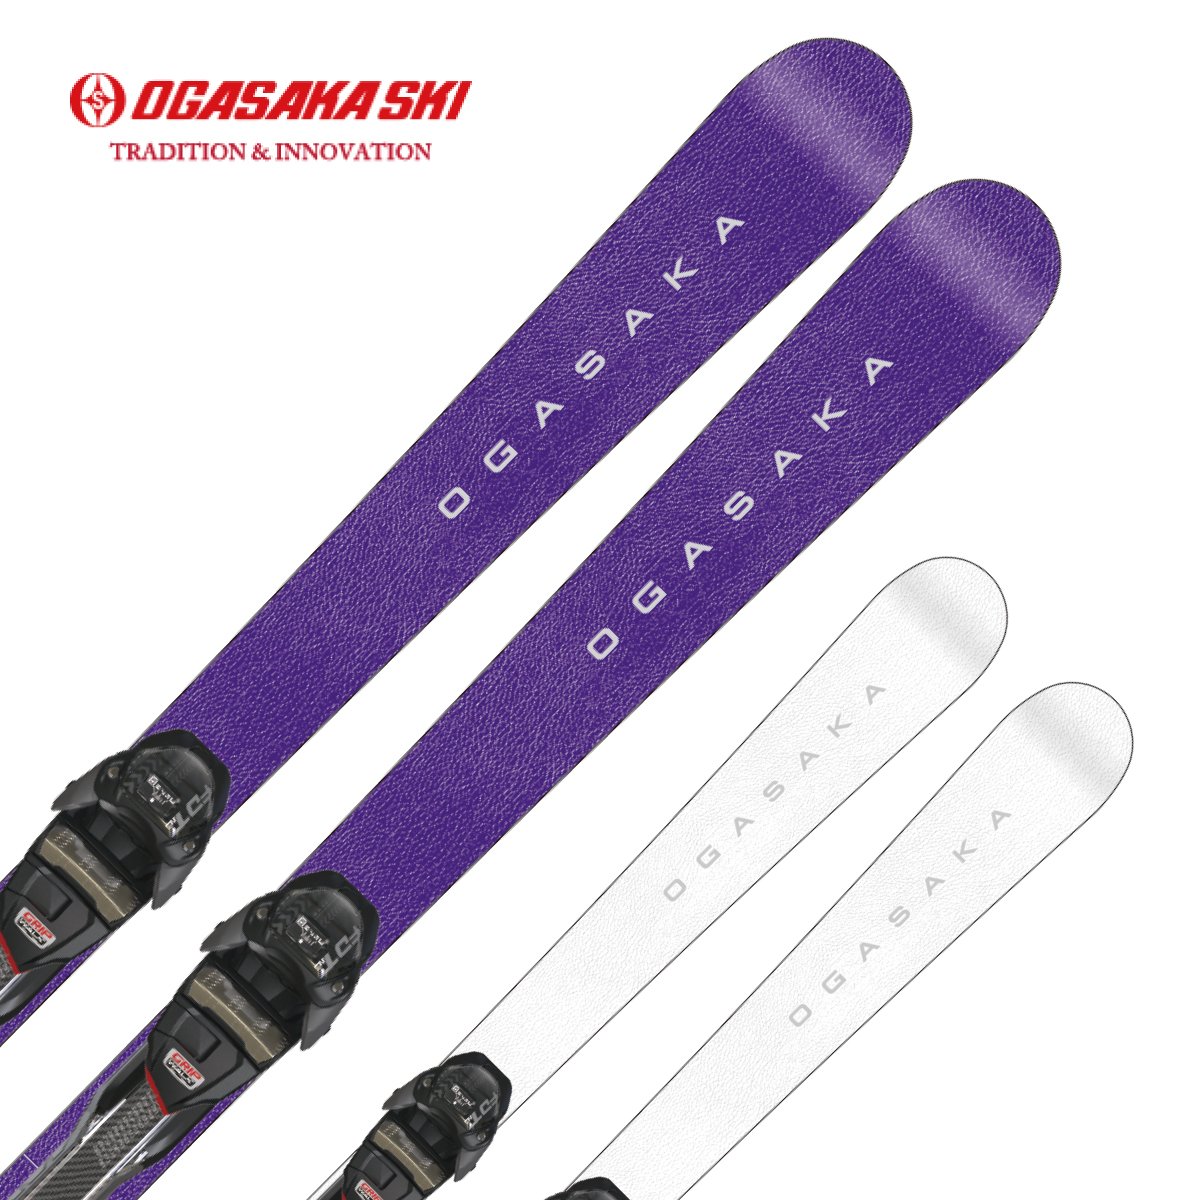 滑雪用品店- 日本品牌滑雪装备和滑雪服饰的顶级零售商